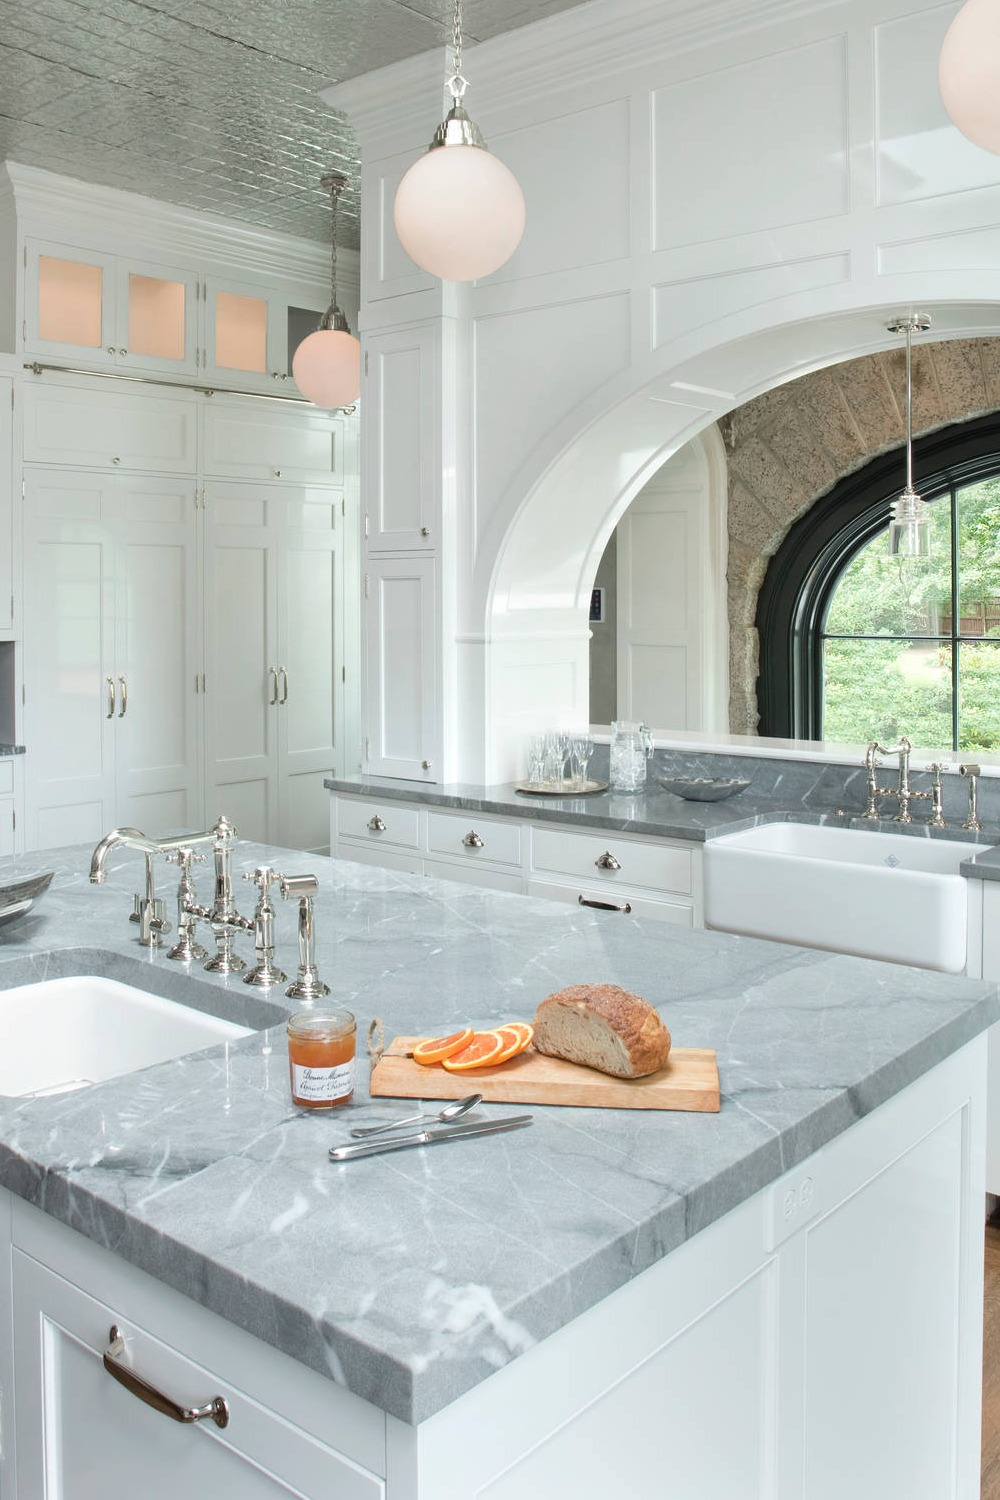 Undermount Sink Straight Into The Sink Kitchen Counter Farmhouse Basin Elegant Create Beauty Sleek